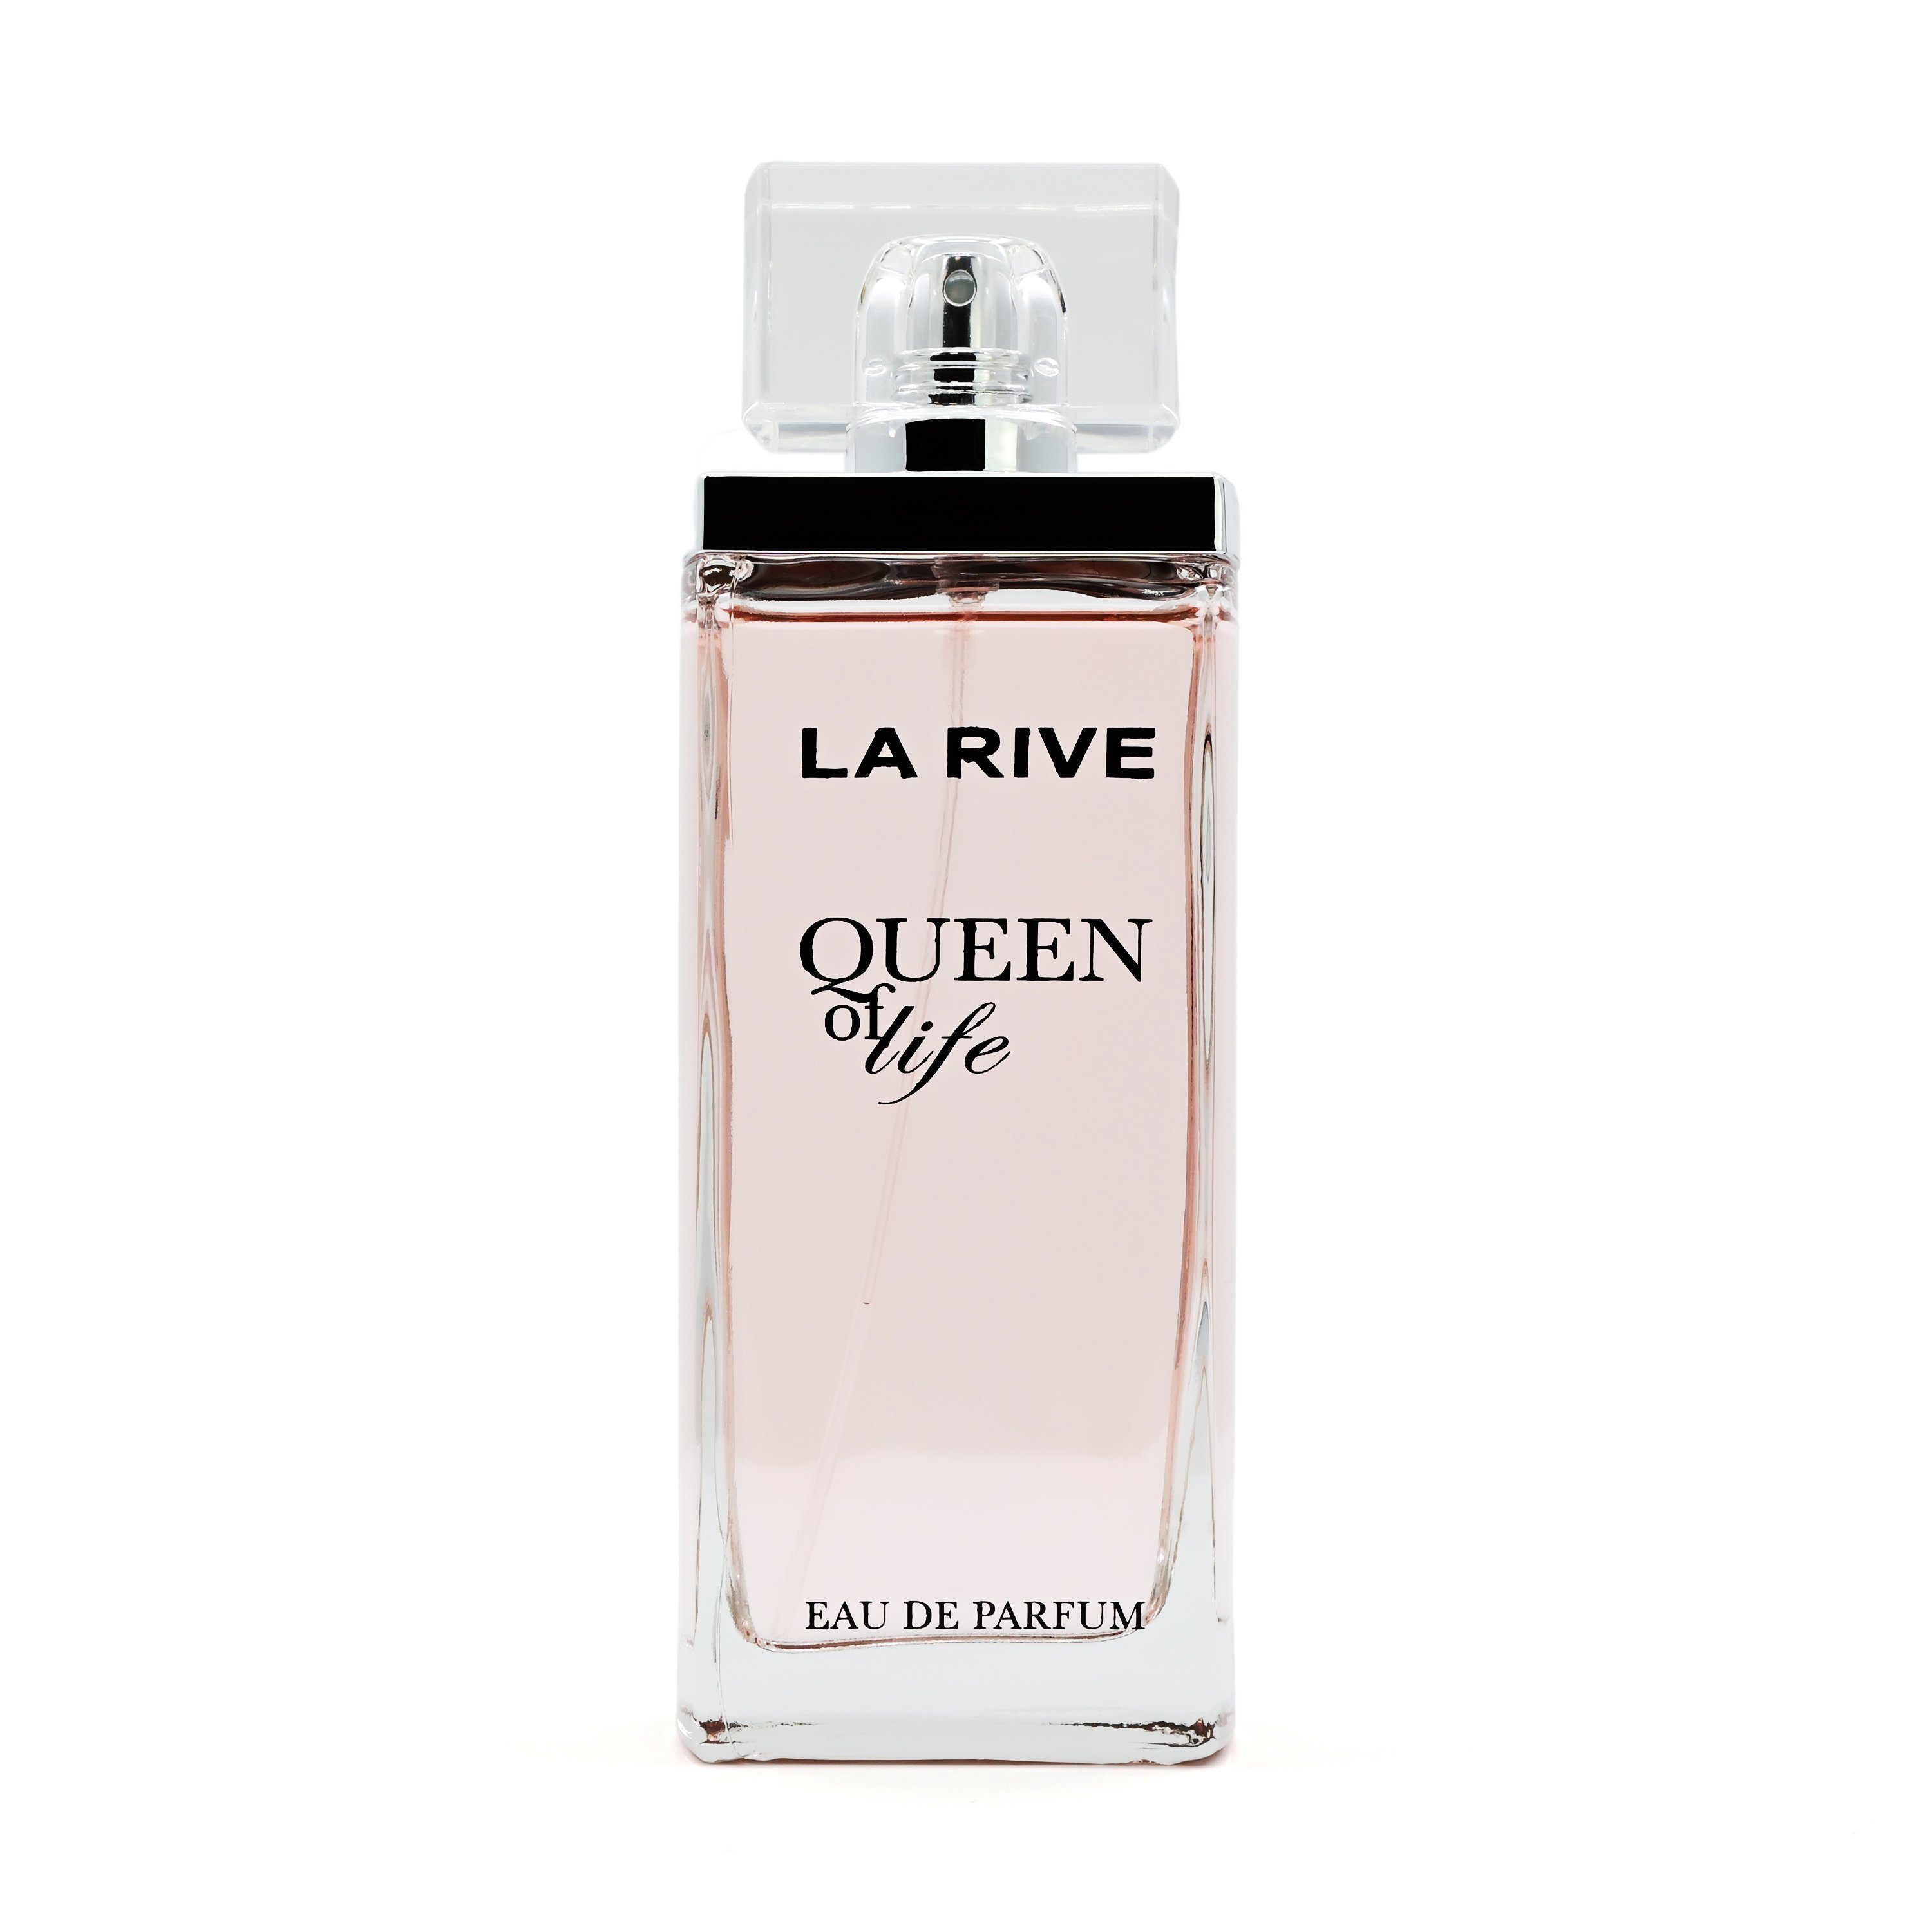 La Rive Eau de of Eau 75 - - Parfum LA RIVE de Life Queen ml Parfum